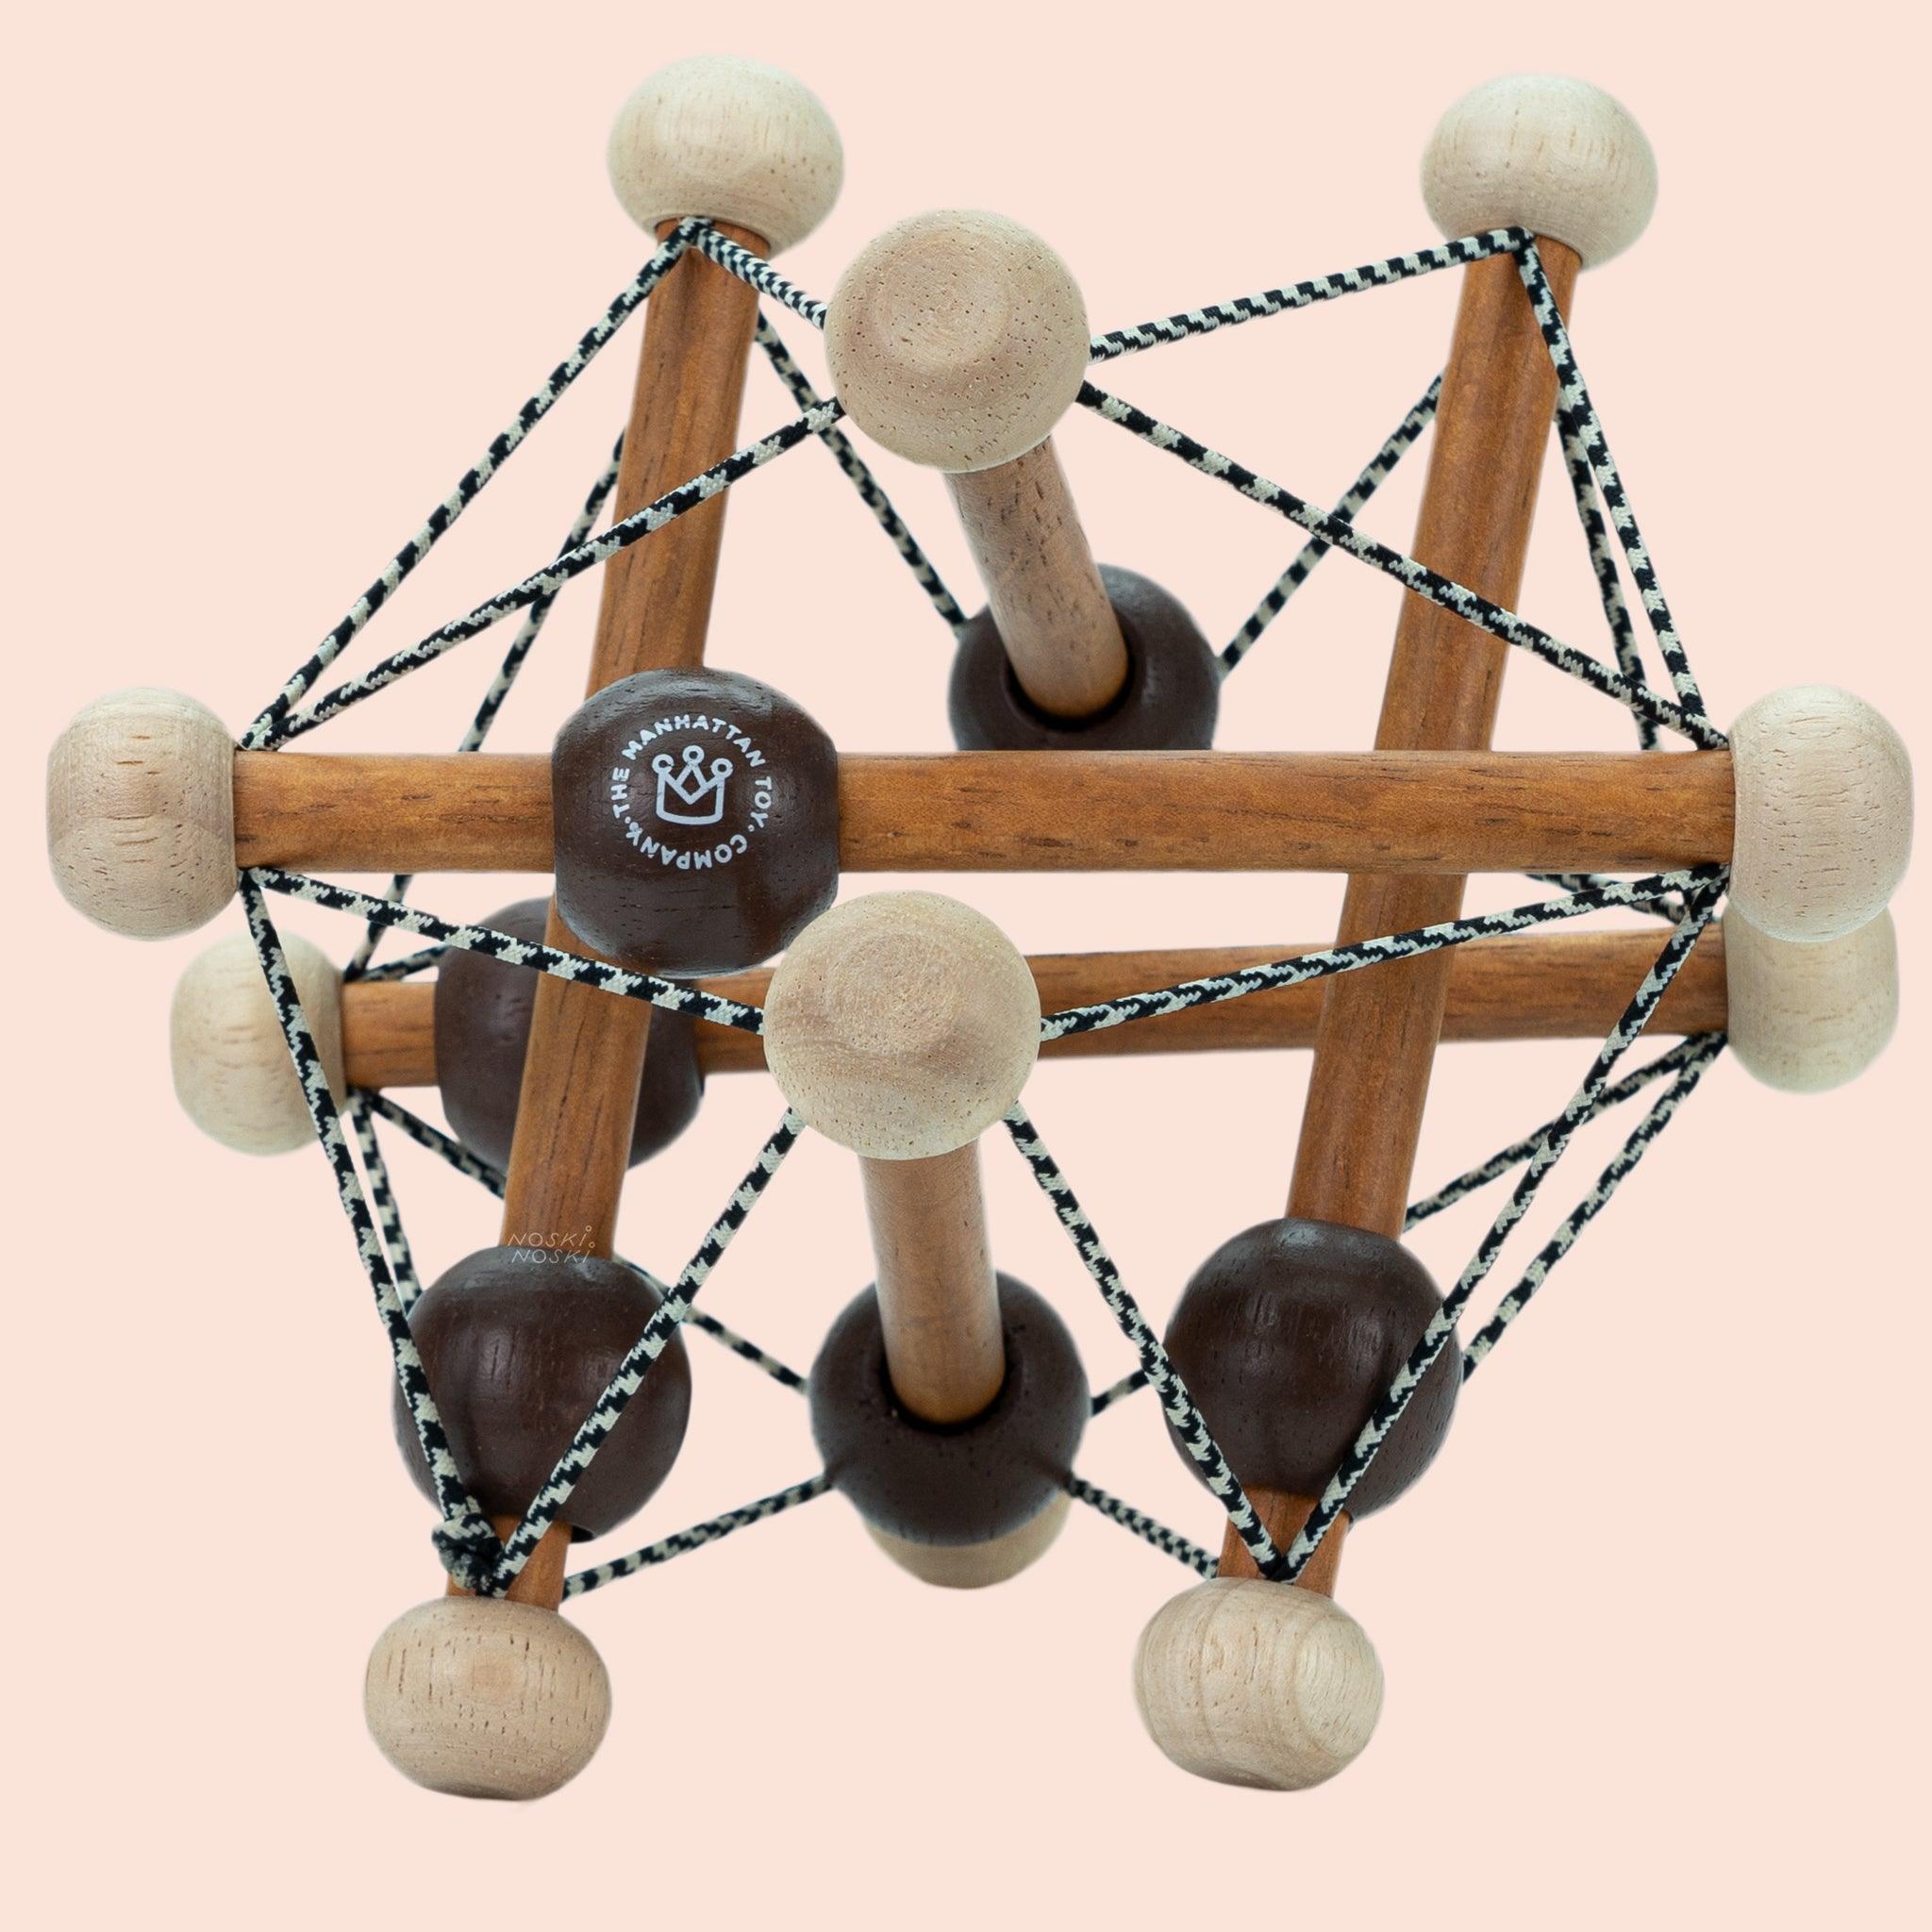 Manhattan Toy: Artful Skwish wooden baby toy - Kidealo